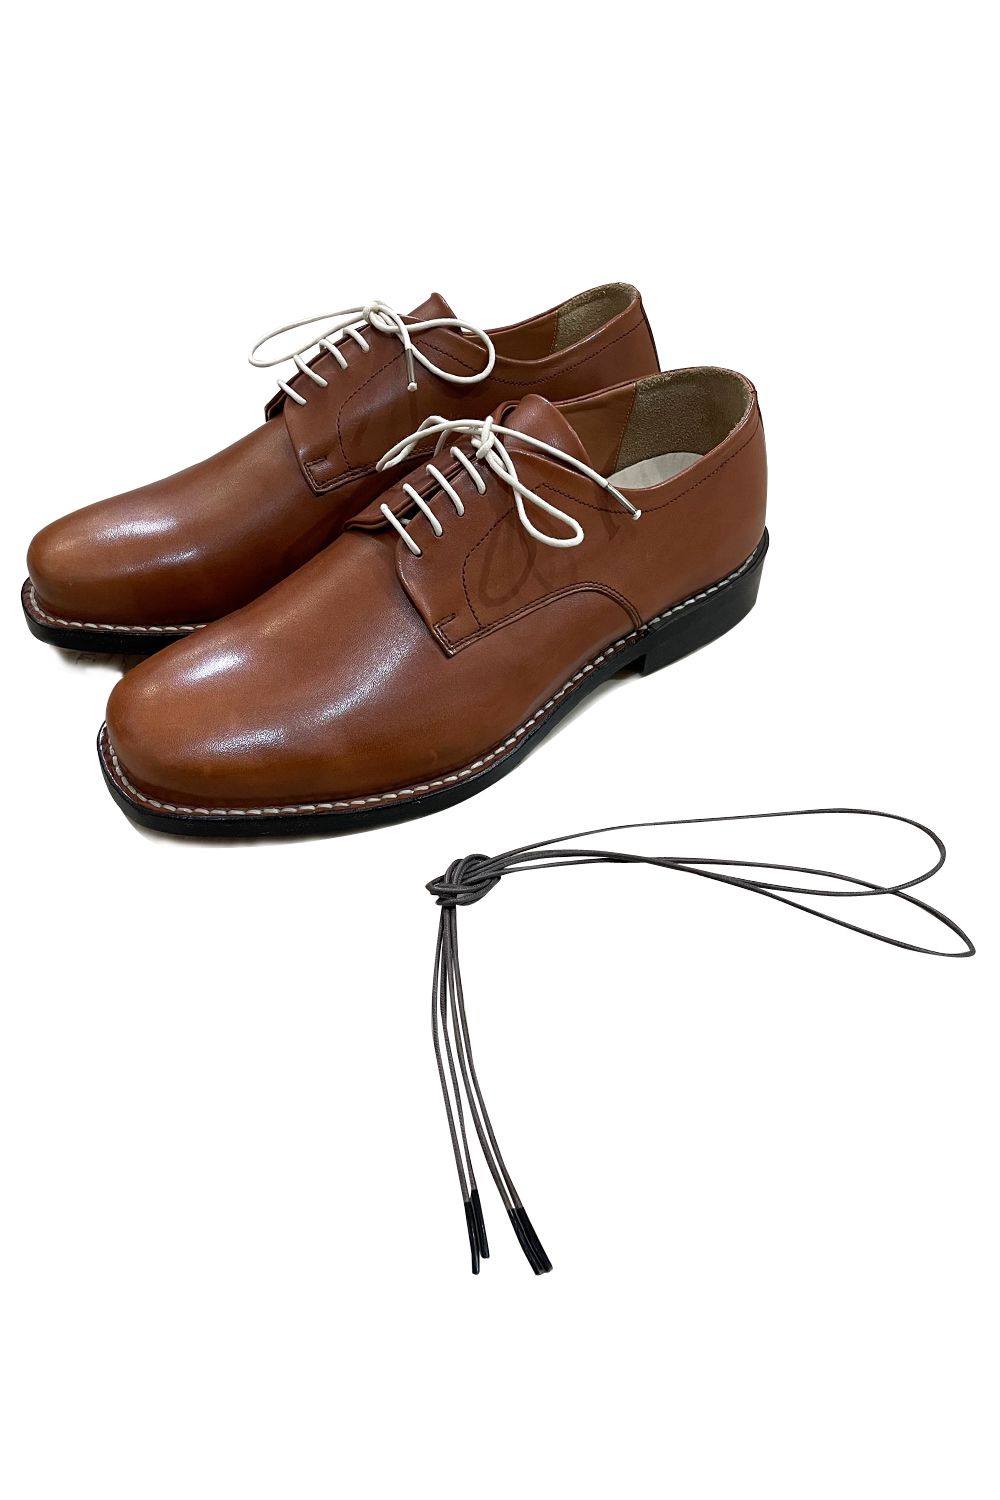 しっかりとした靴の製法ながらスニーカーなどの要素も取り入れ普段使い